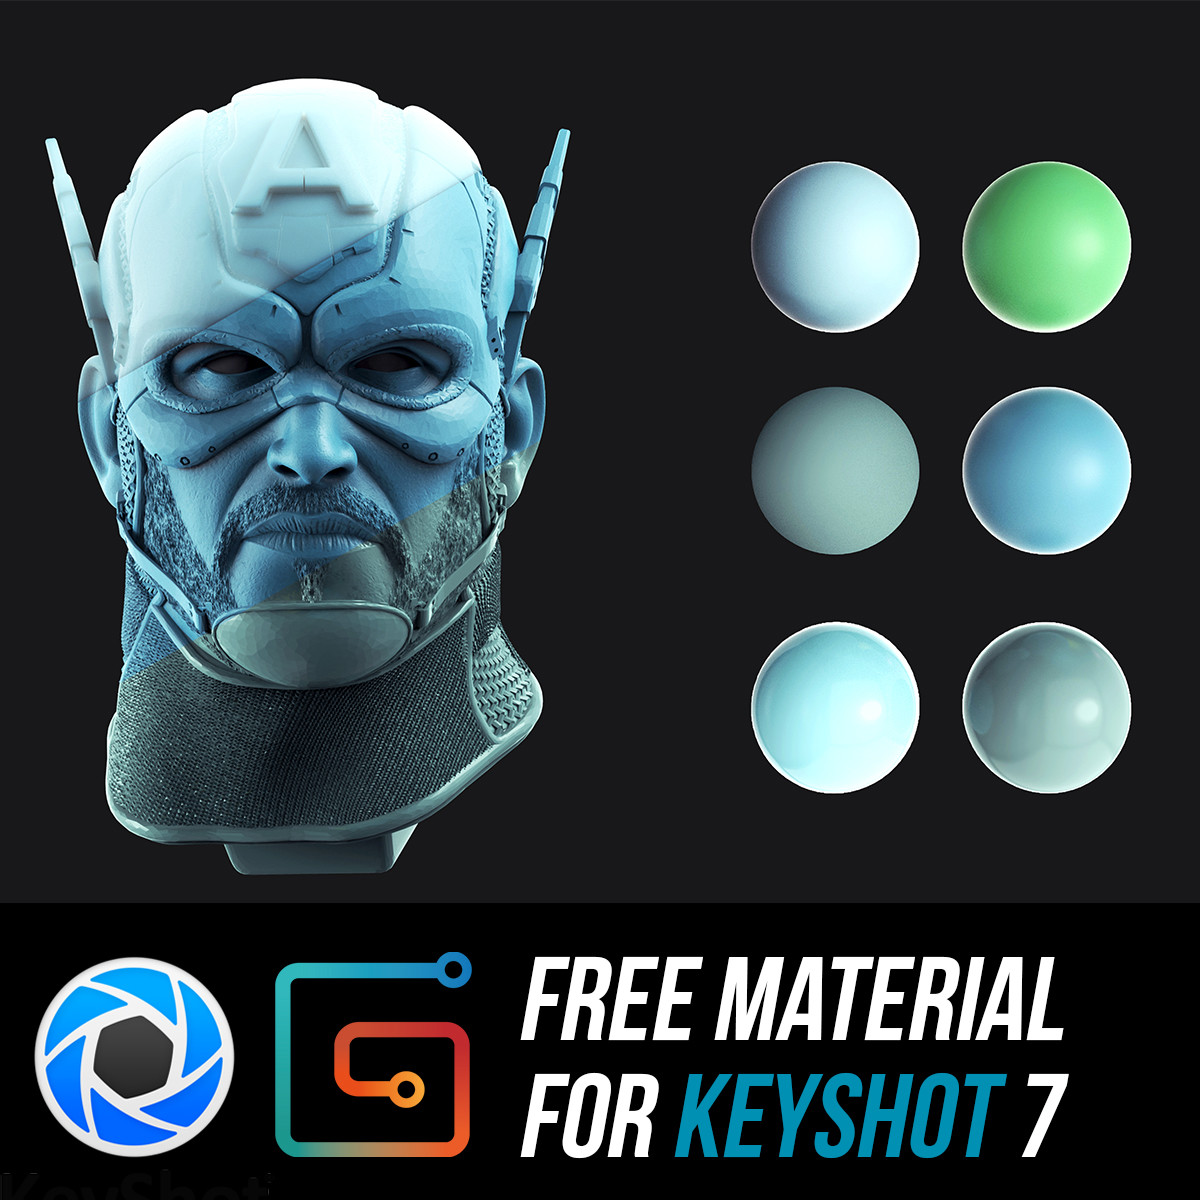 keyshot is free zbrush